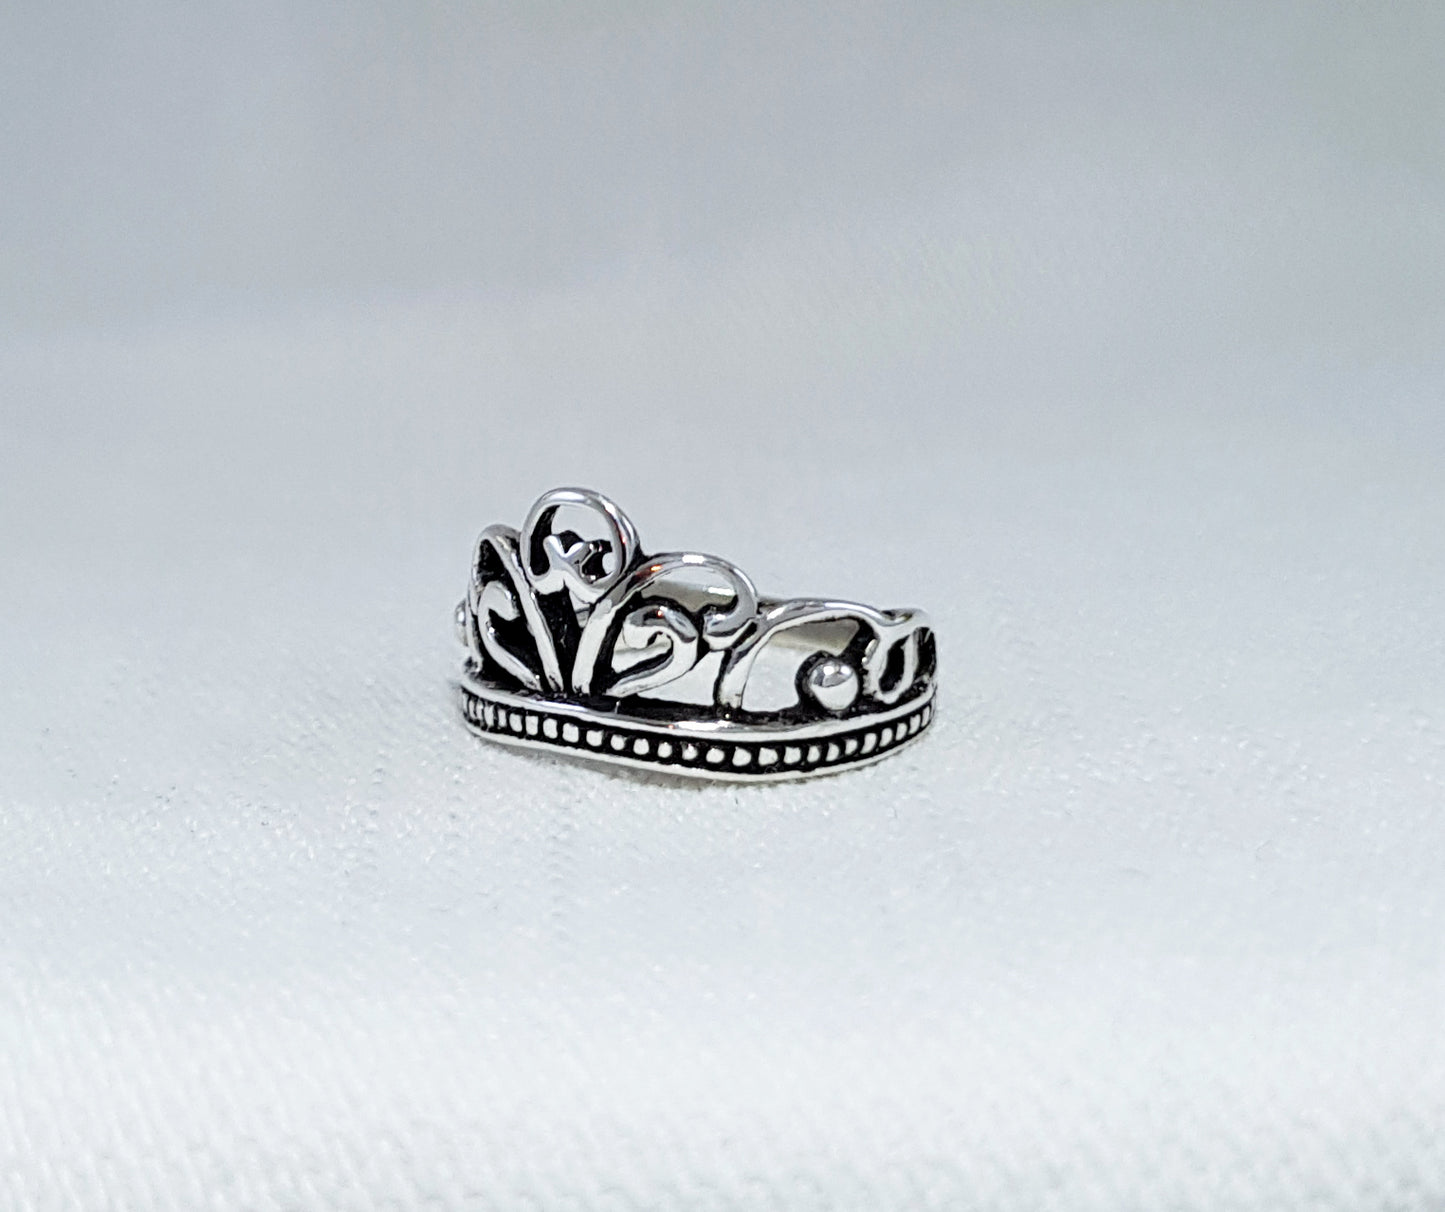 Sterling Silver Crown Ring - Tiara